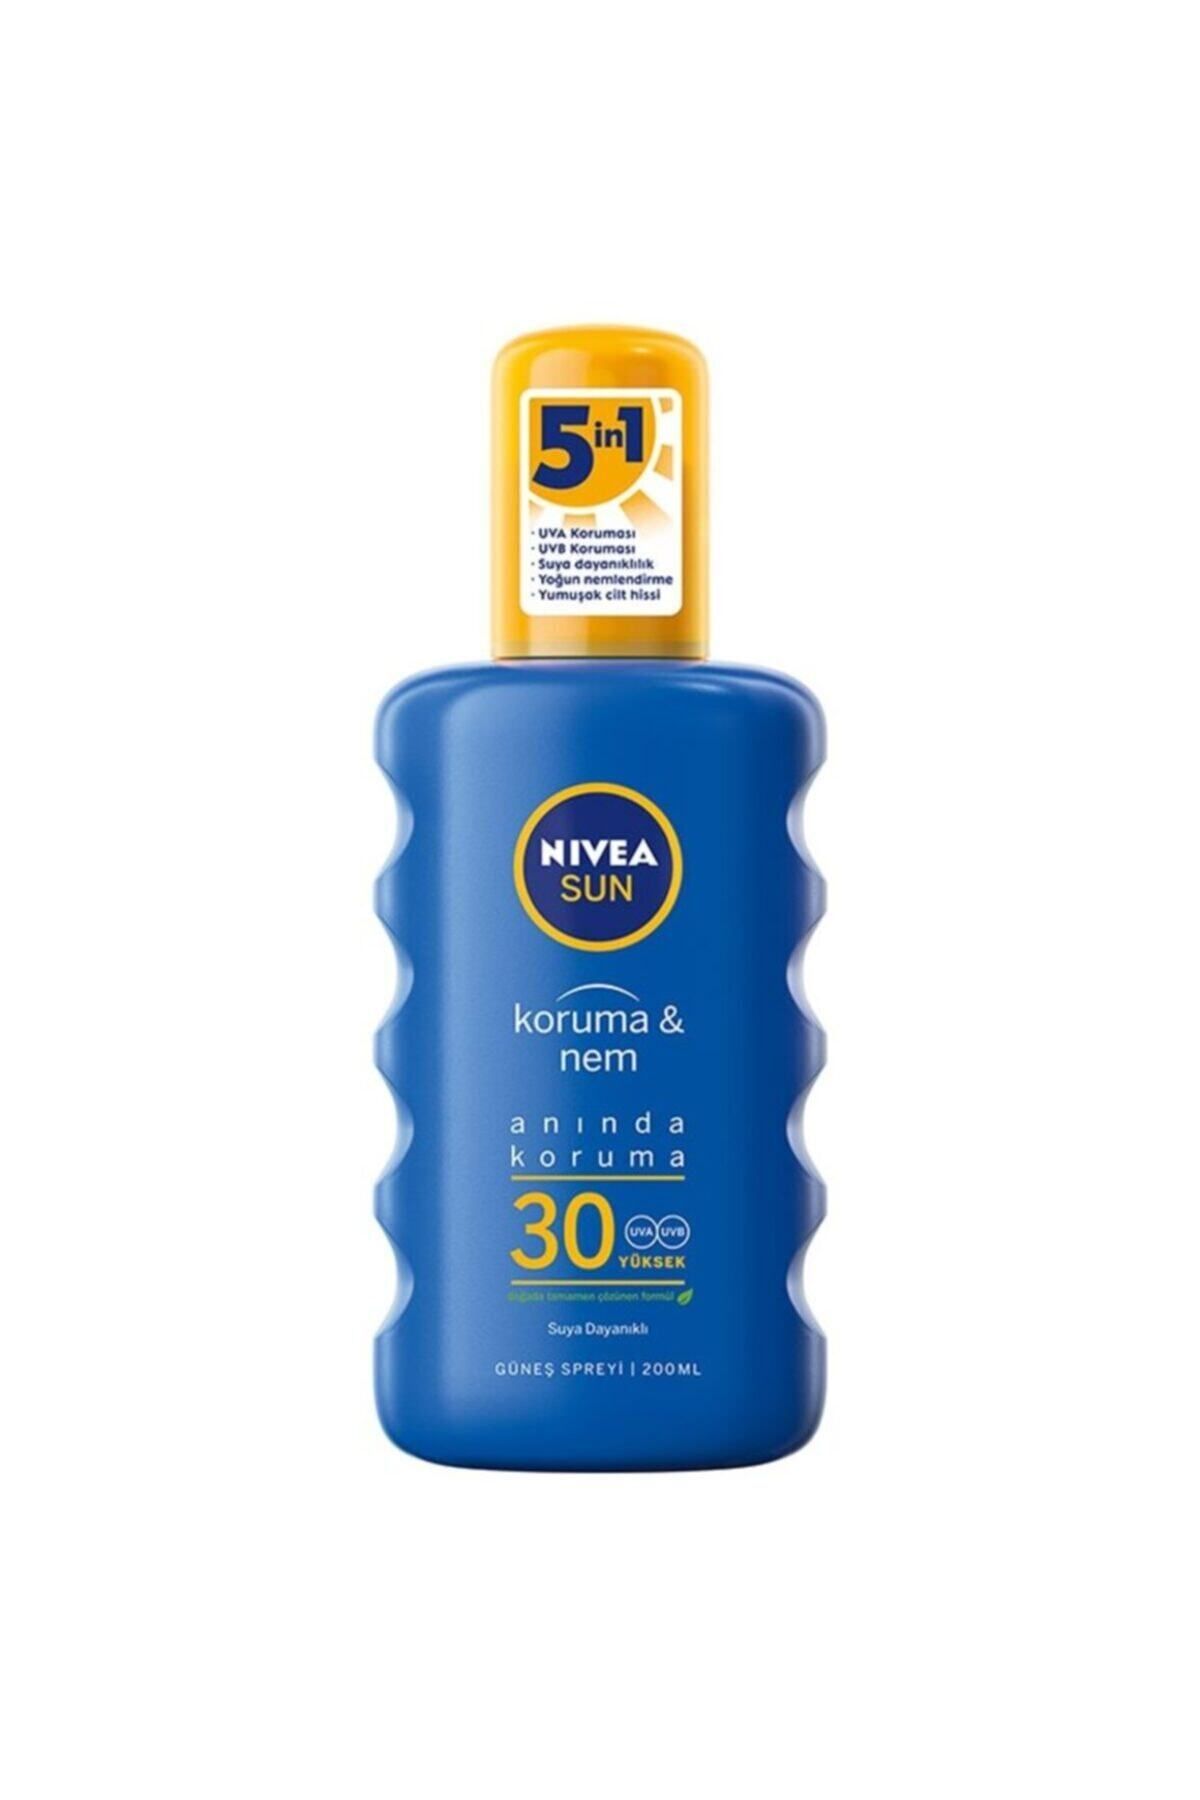 NIVEA ضد آفتاب و مرطوب کننده با SPF 30 و حجم 200 میلی لیتر